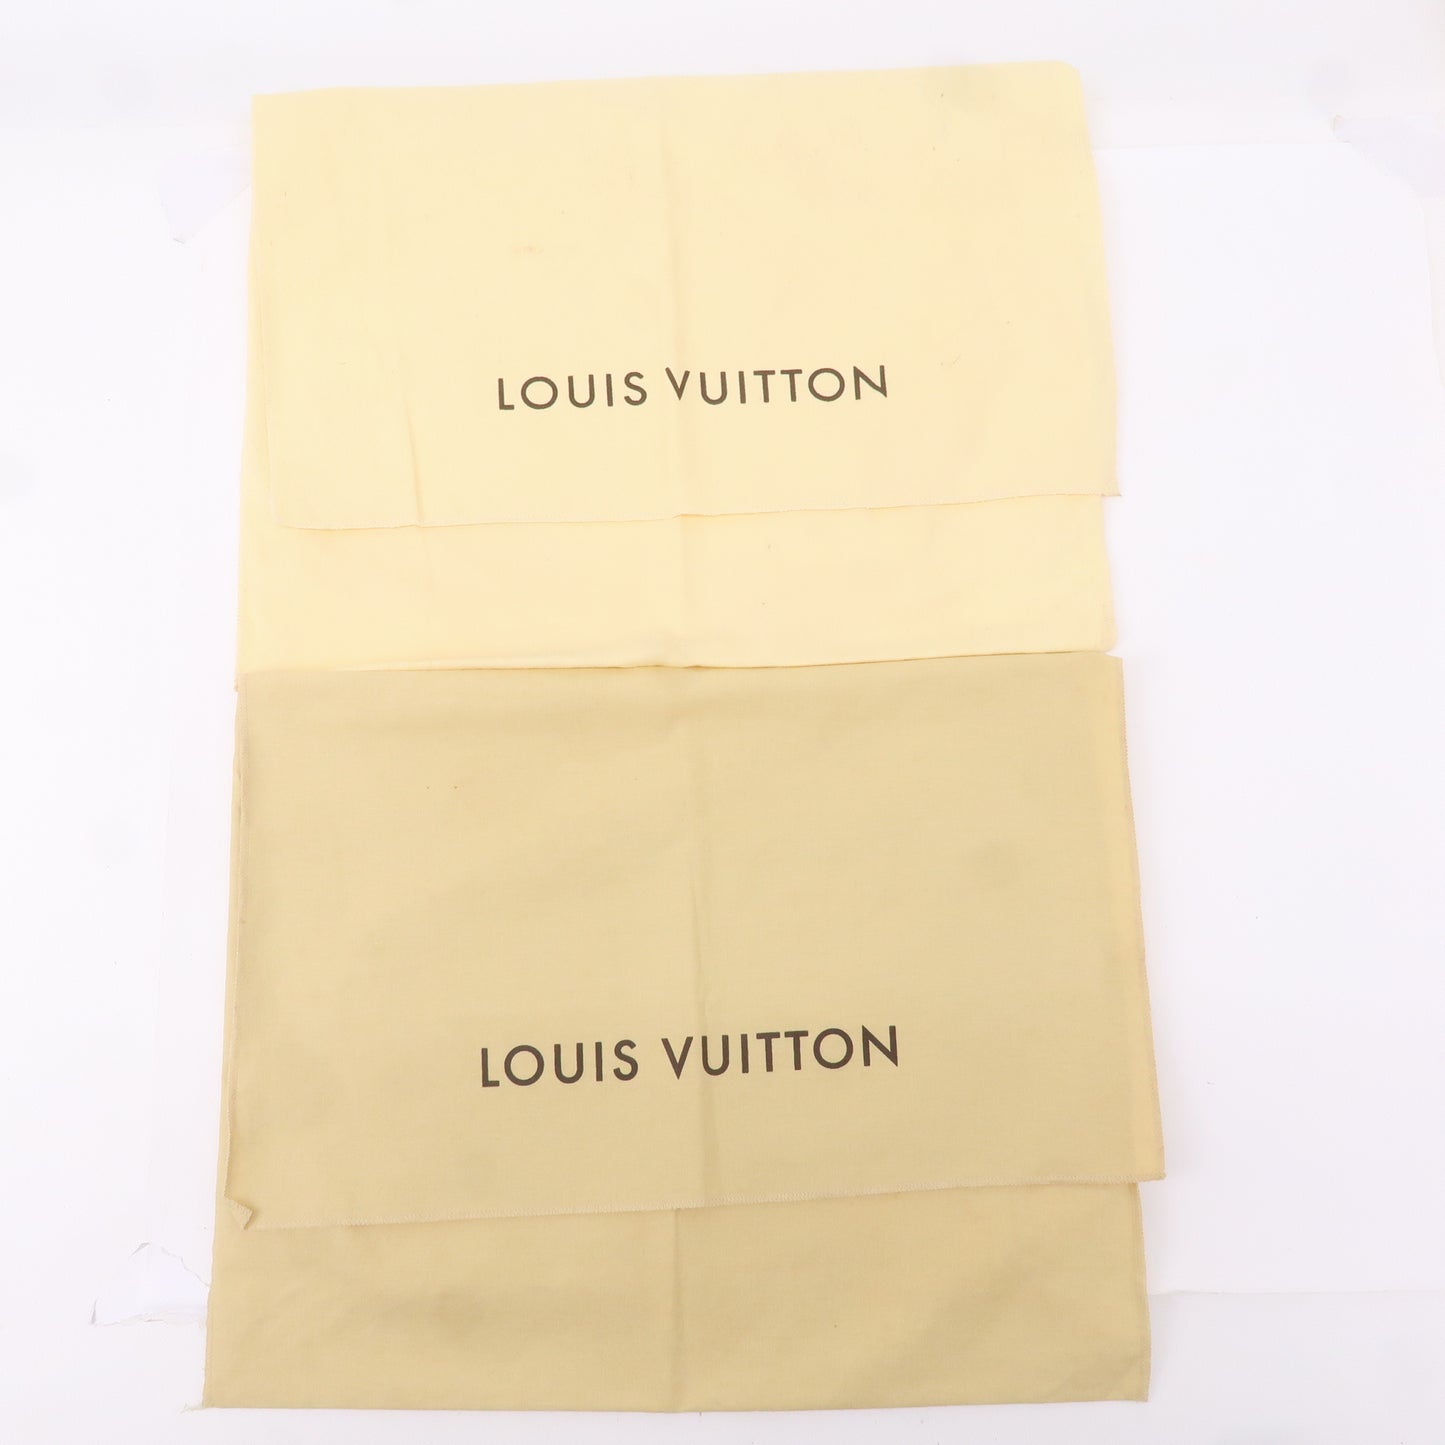 Louis-Vuitton-Set-of-15-Dust-Bag-Storage-Bag-Flap-Style-Beige-Bwon